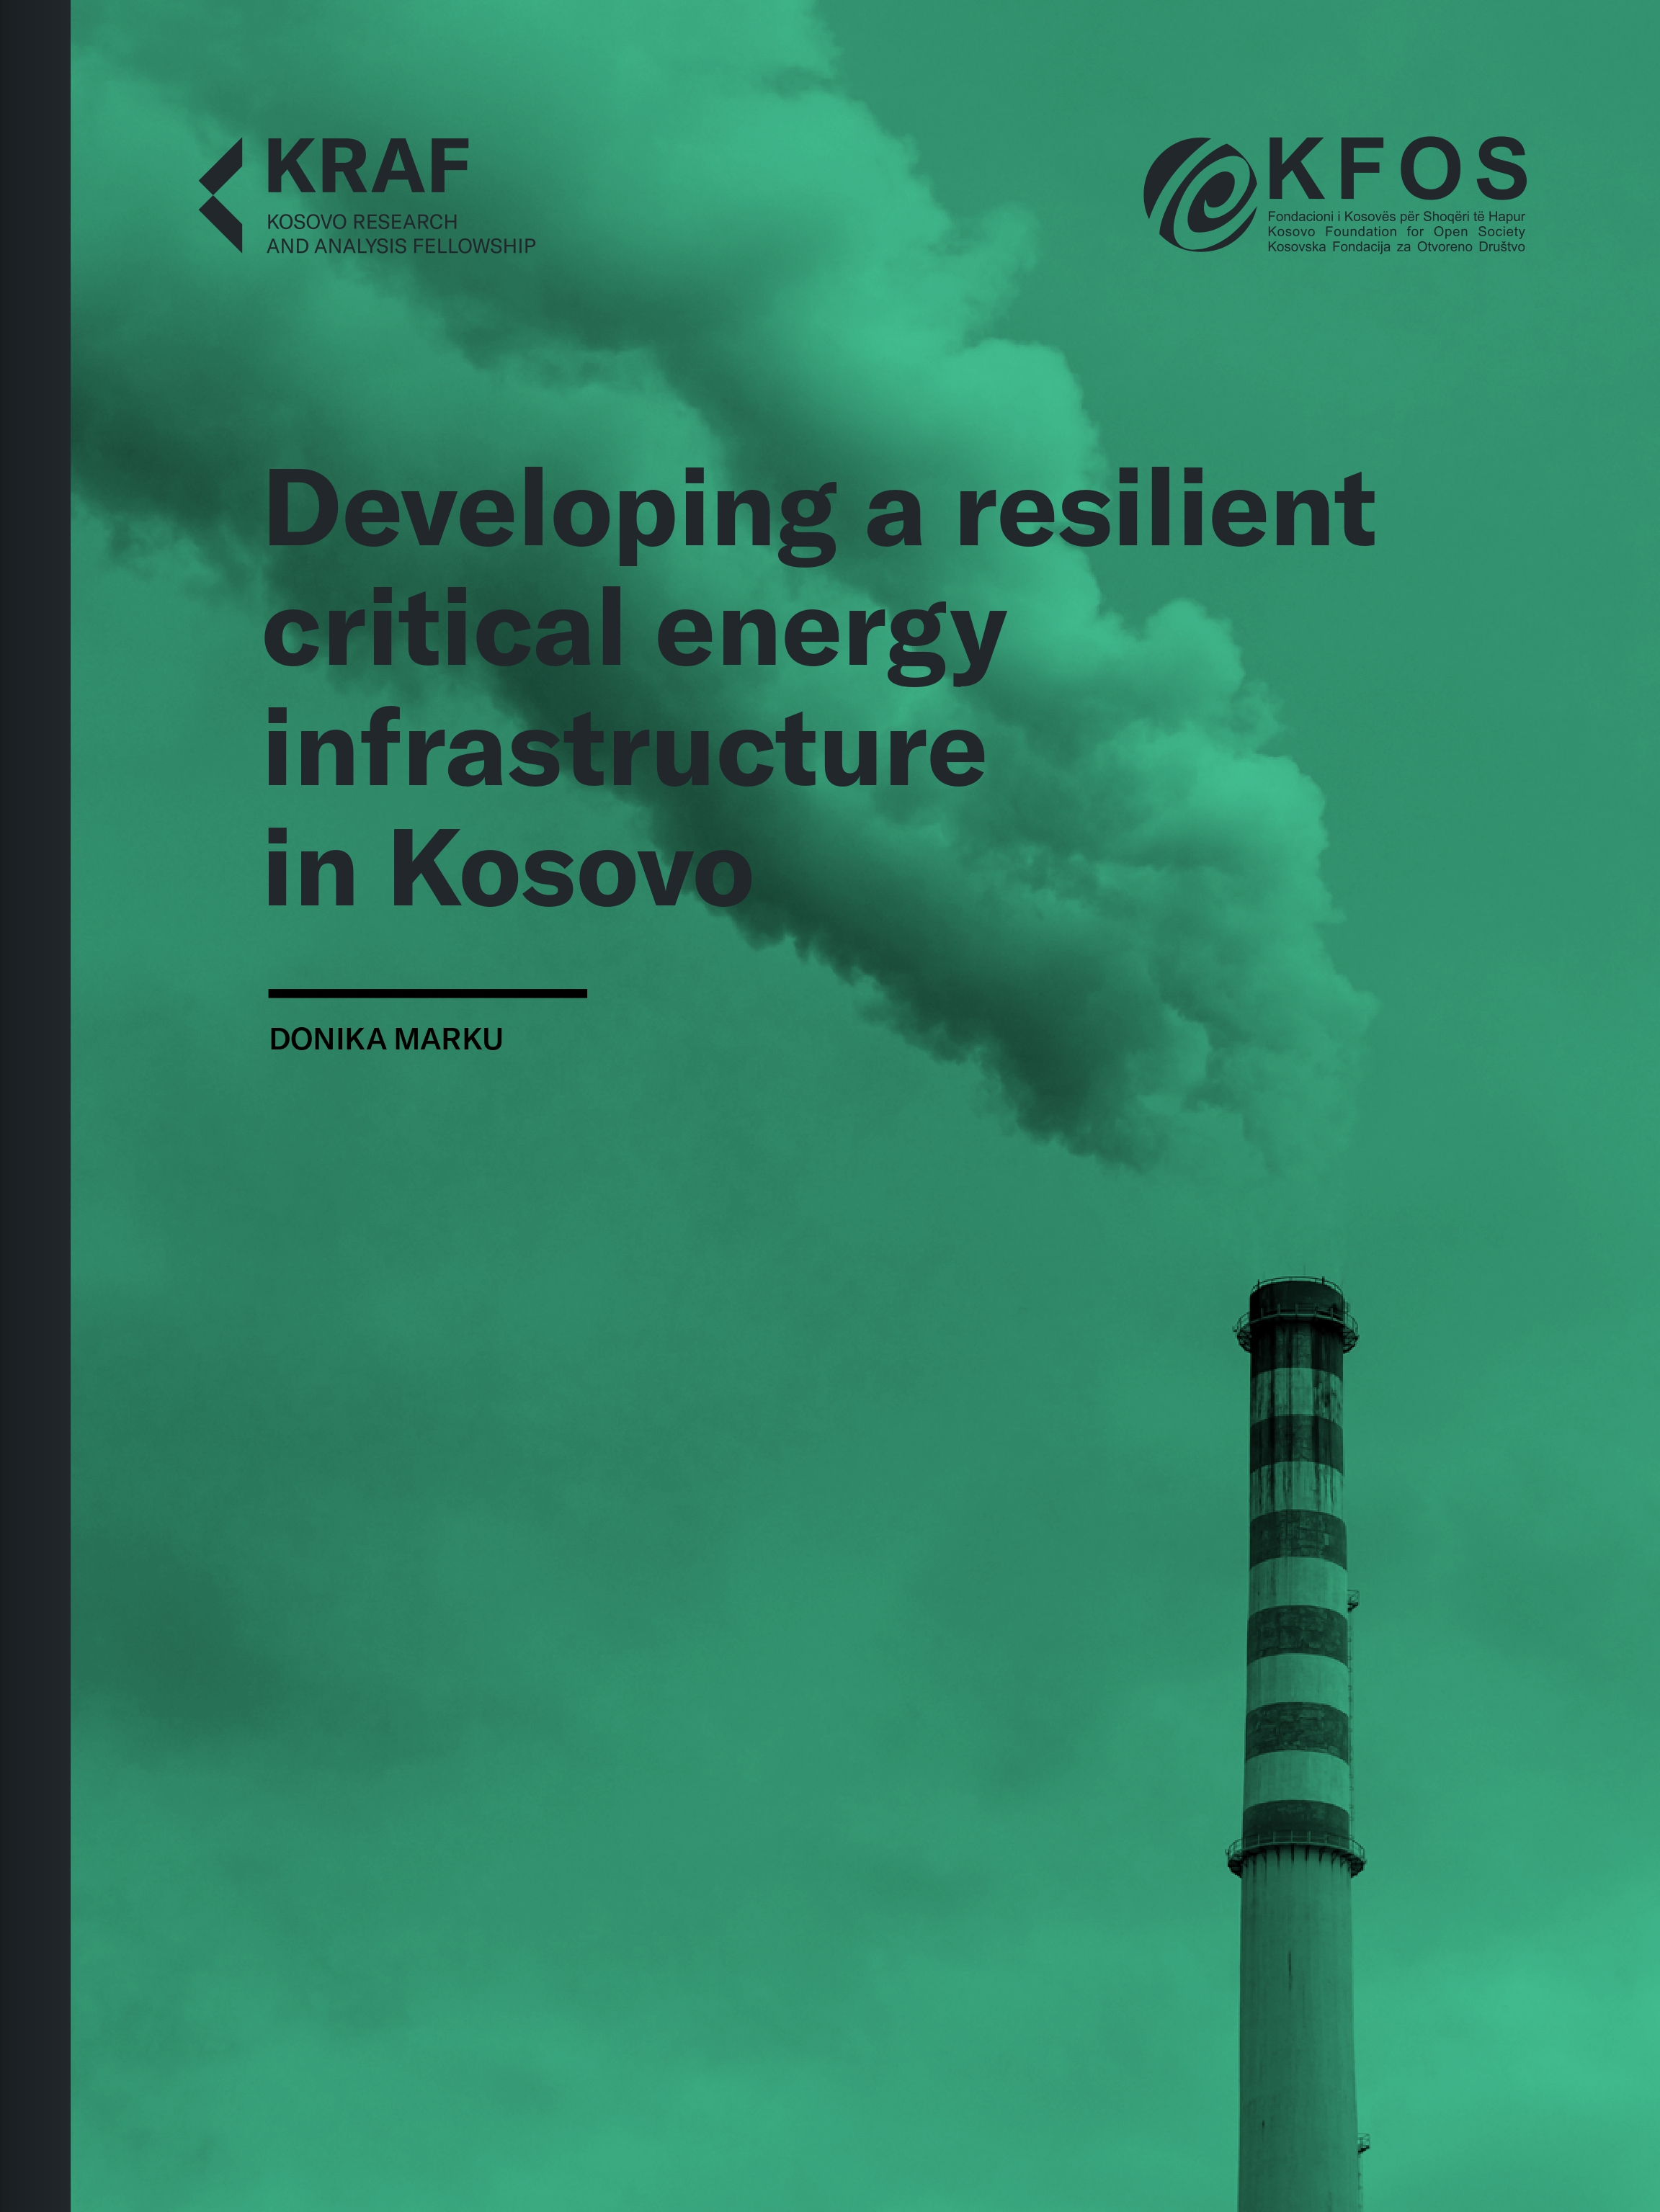 Zhvillimi i infrastrukturës kritike energjetike reziliente në Kosovë